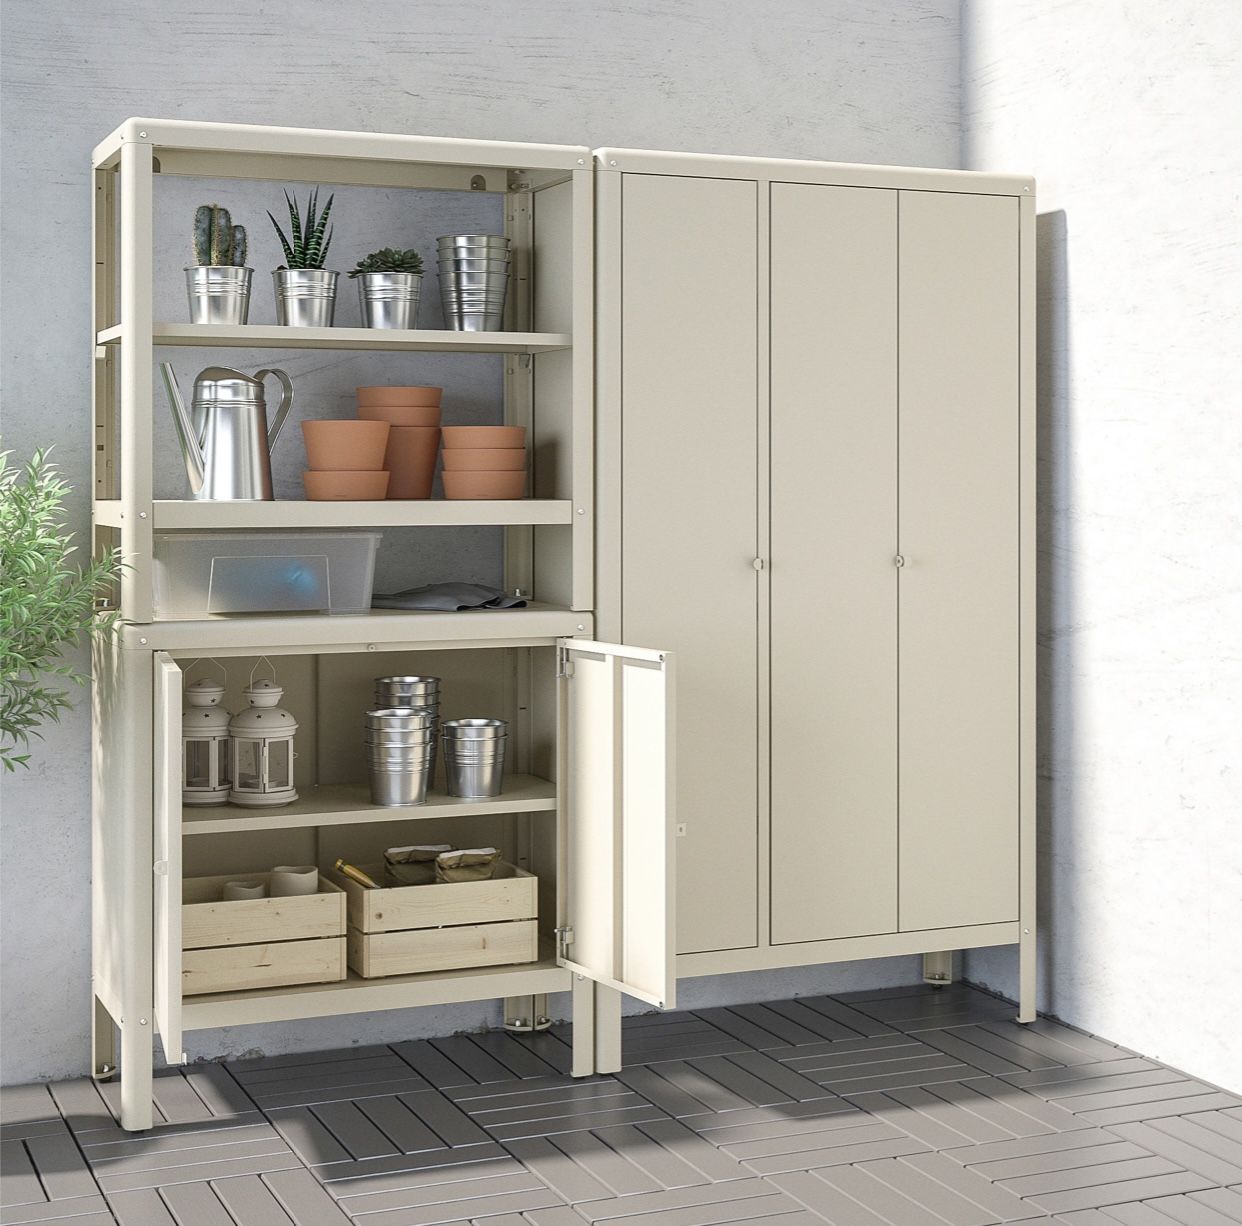 Indoor / outdoor storage cabinet